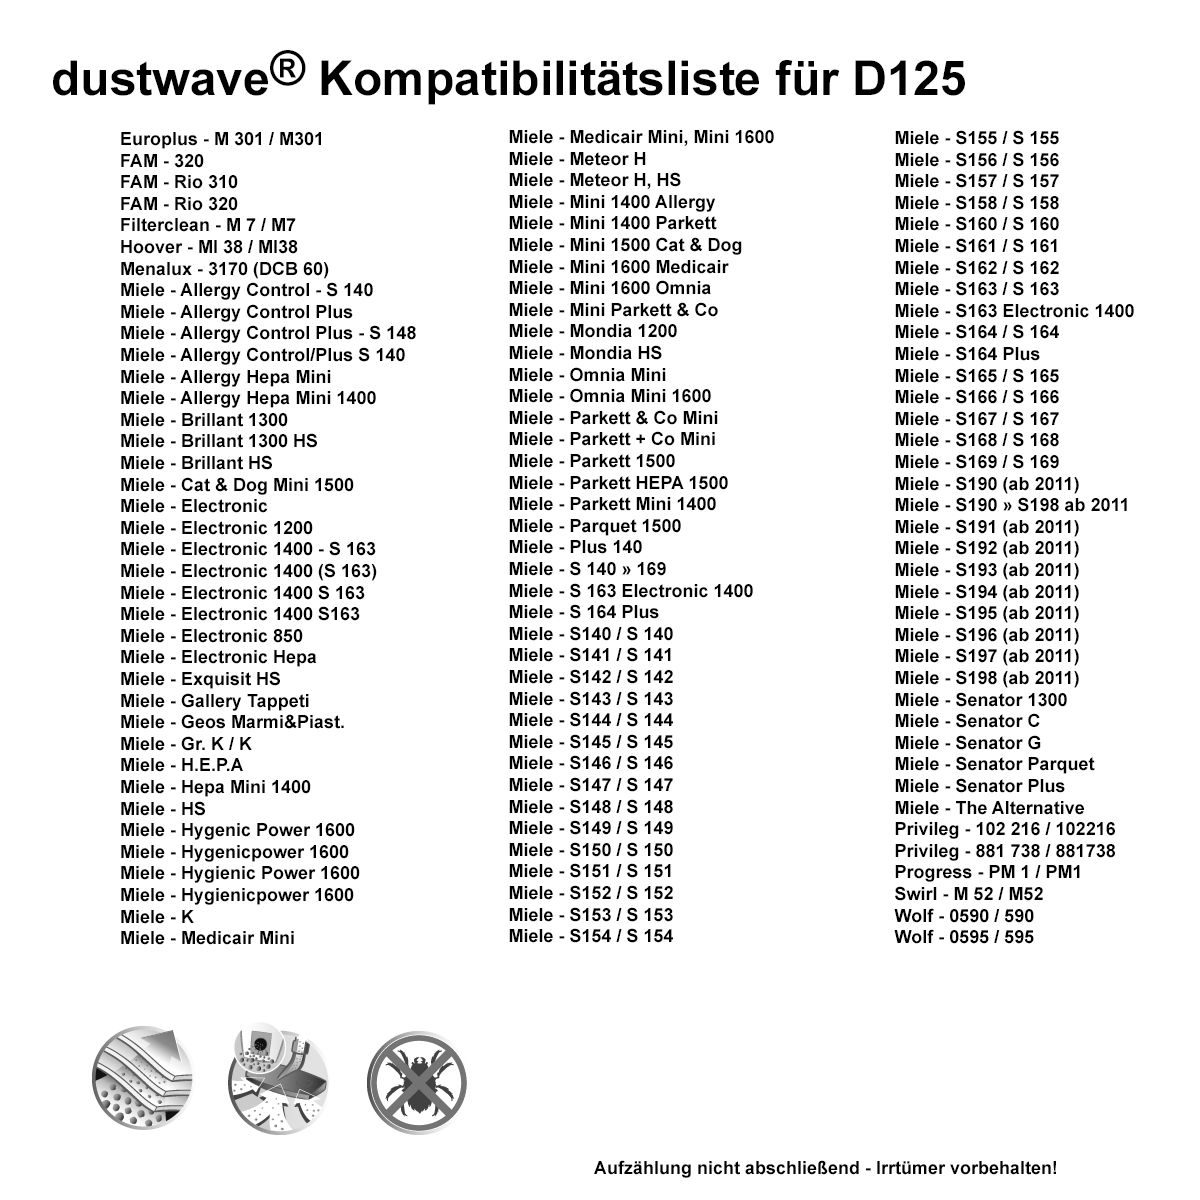 Dustwave® 5 Staubsaugerbeutel für Miele Senator Parquet - hocheffizient, mehrlagiges Mikrovlies mit Hygieneverschluss - Made in Germany